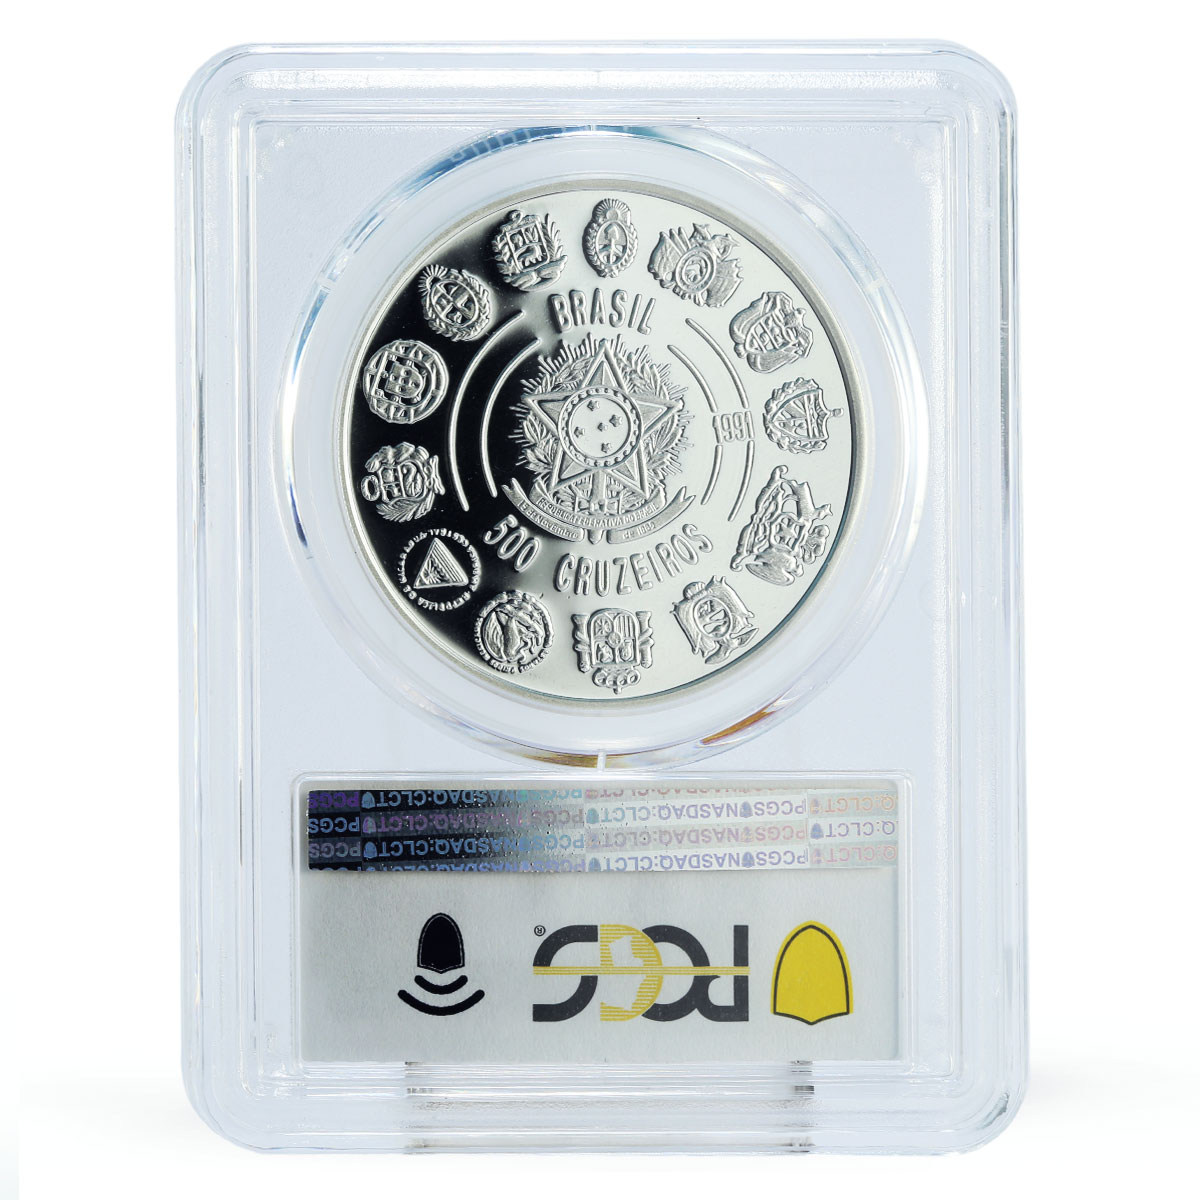 Brazil 500 cruzeiros Encounter of Two Worlds Ship PR69 PCGS silver coin 1991